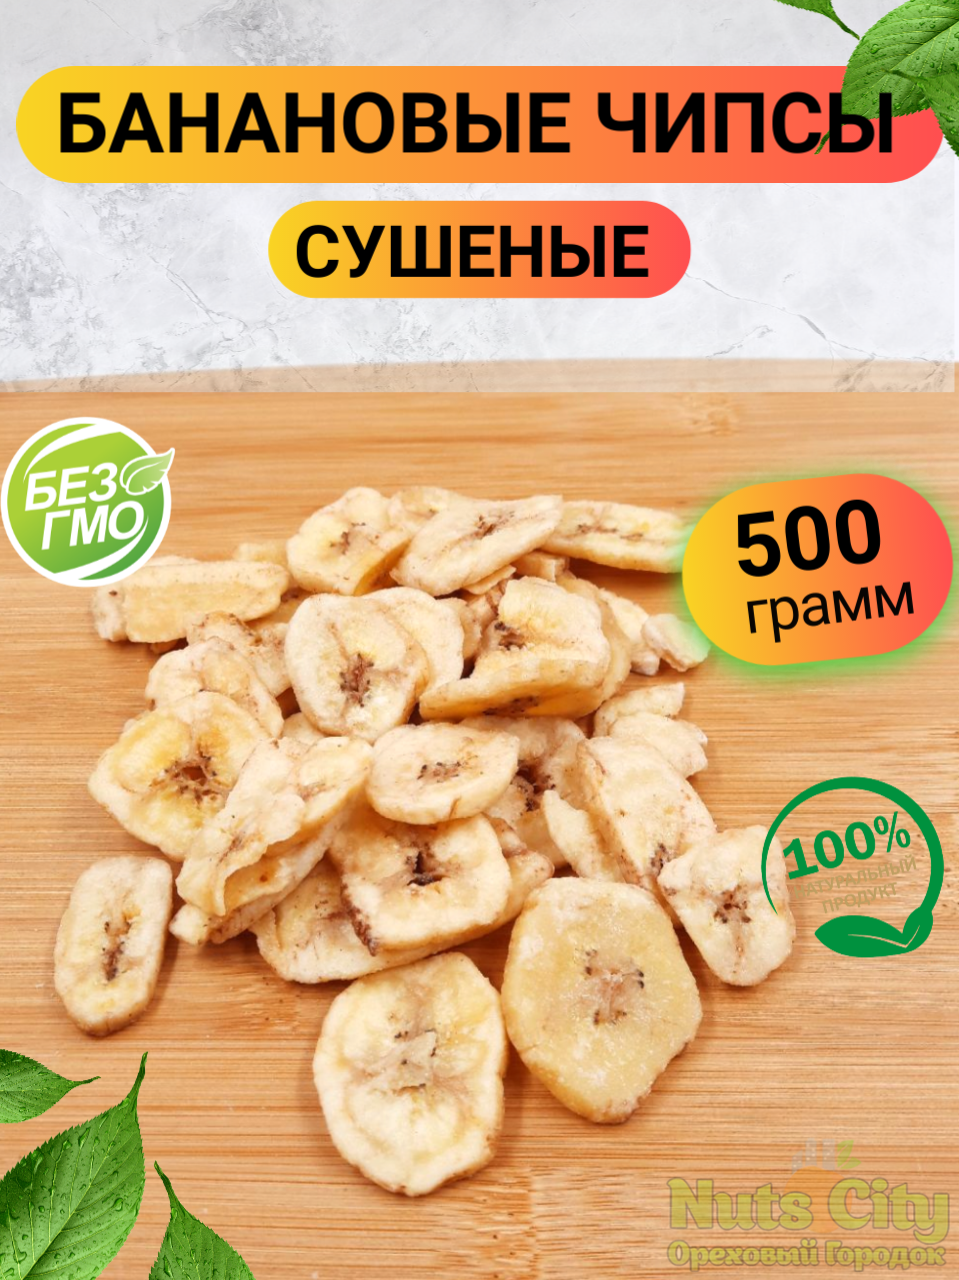 Банановые чипсы 500гр/ Банановые чипсы сушеные без сахара 0.5кг/Ореховый Городок